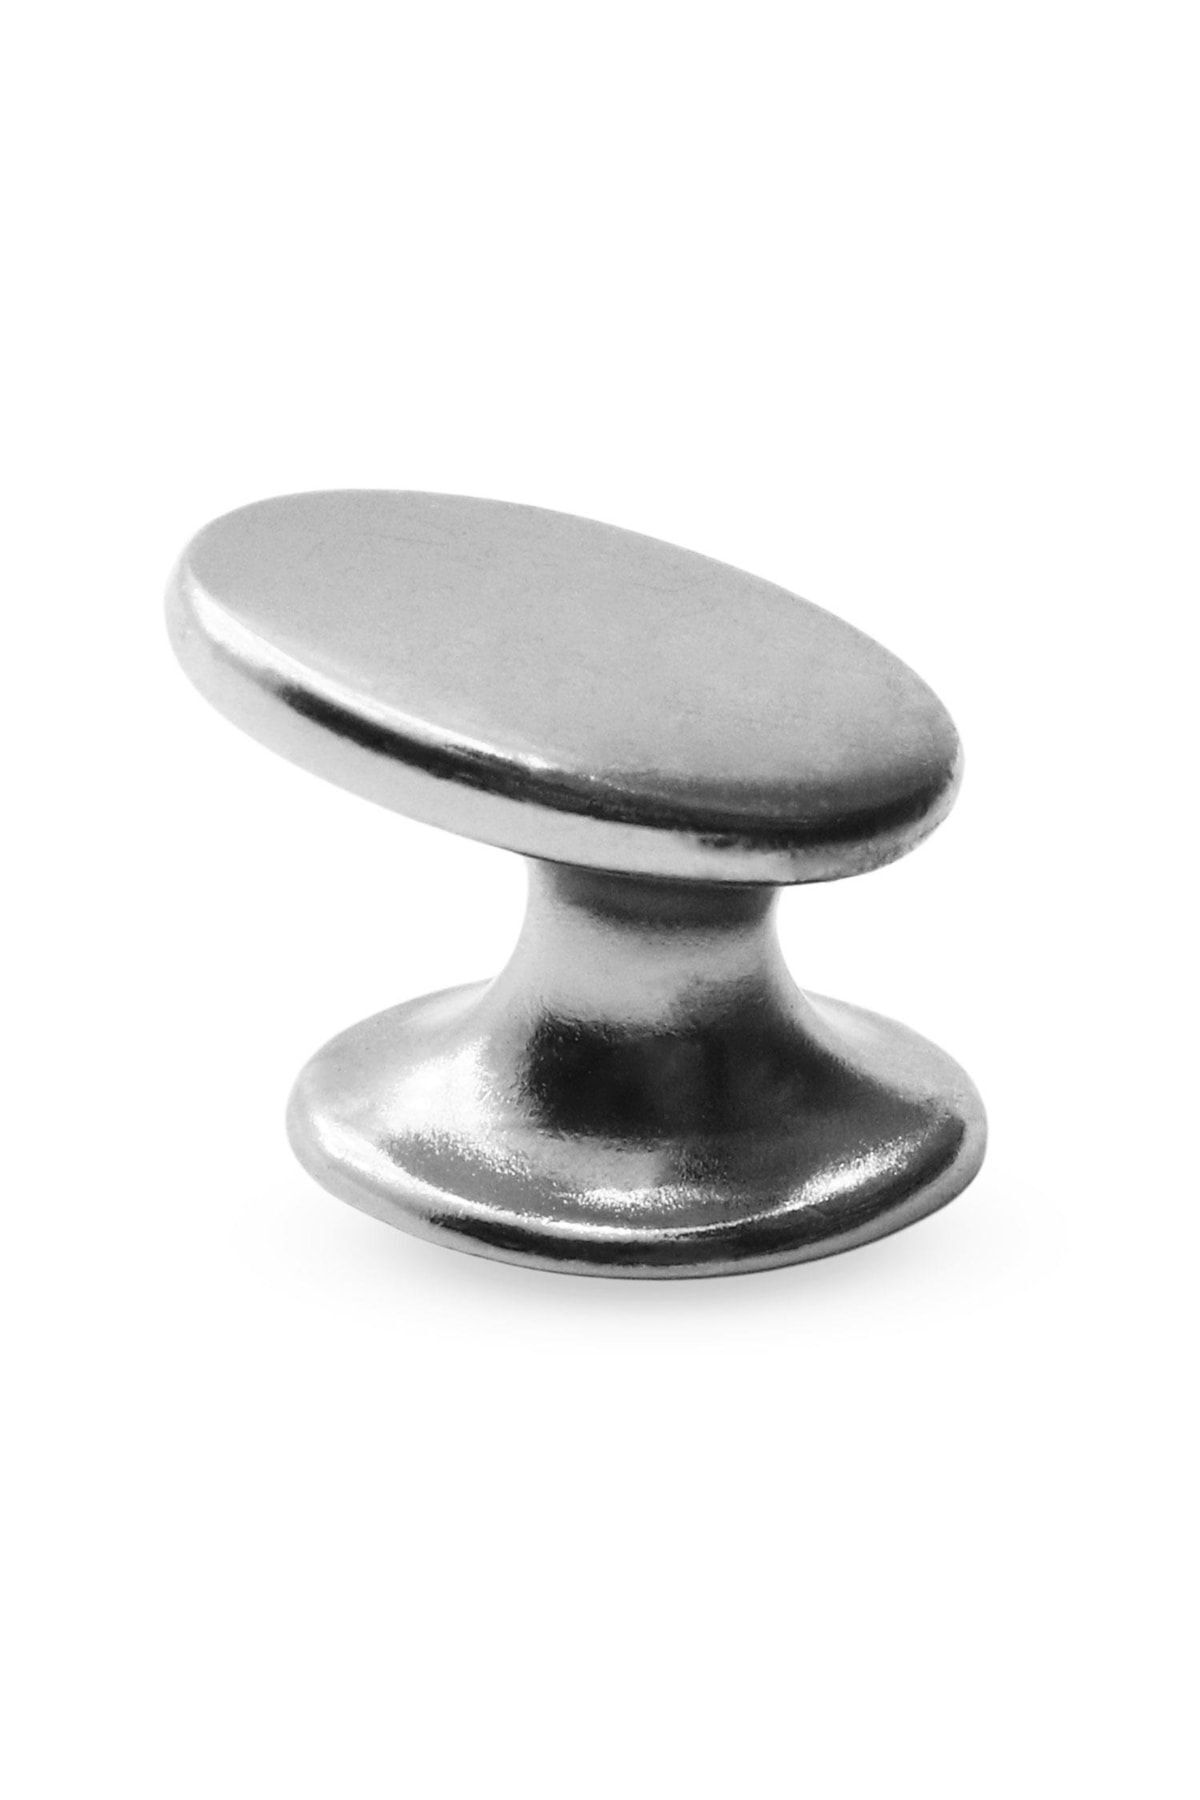 Badem10 Parmak Çekmece Dolap Dolabı Kapak Kulpu Kulpları Kulbu Parlak Krom Metal Düğme Kulp Mobilya Mutfak